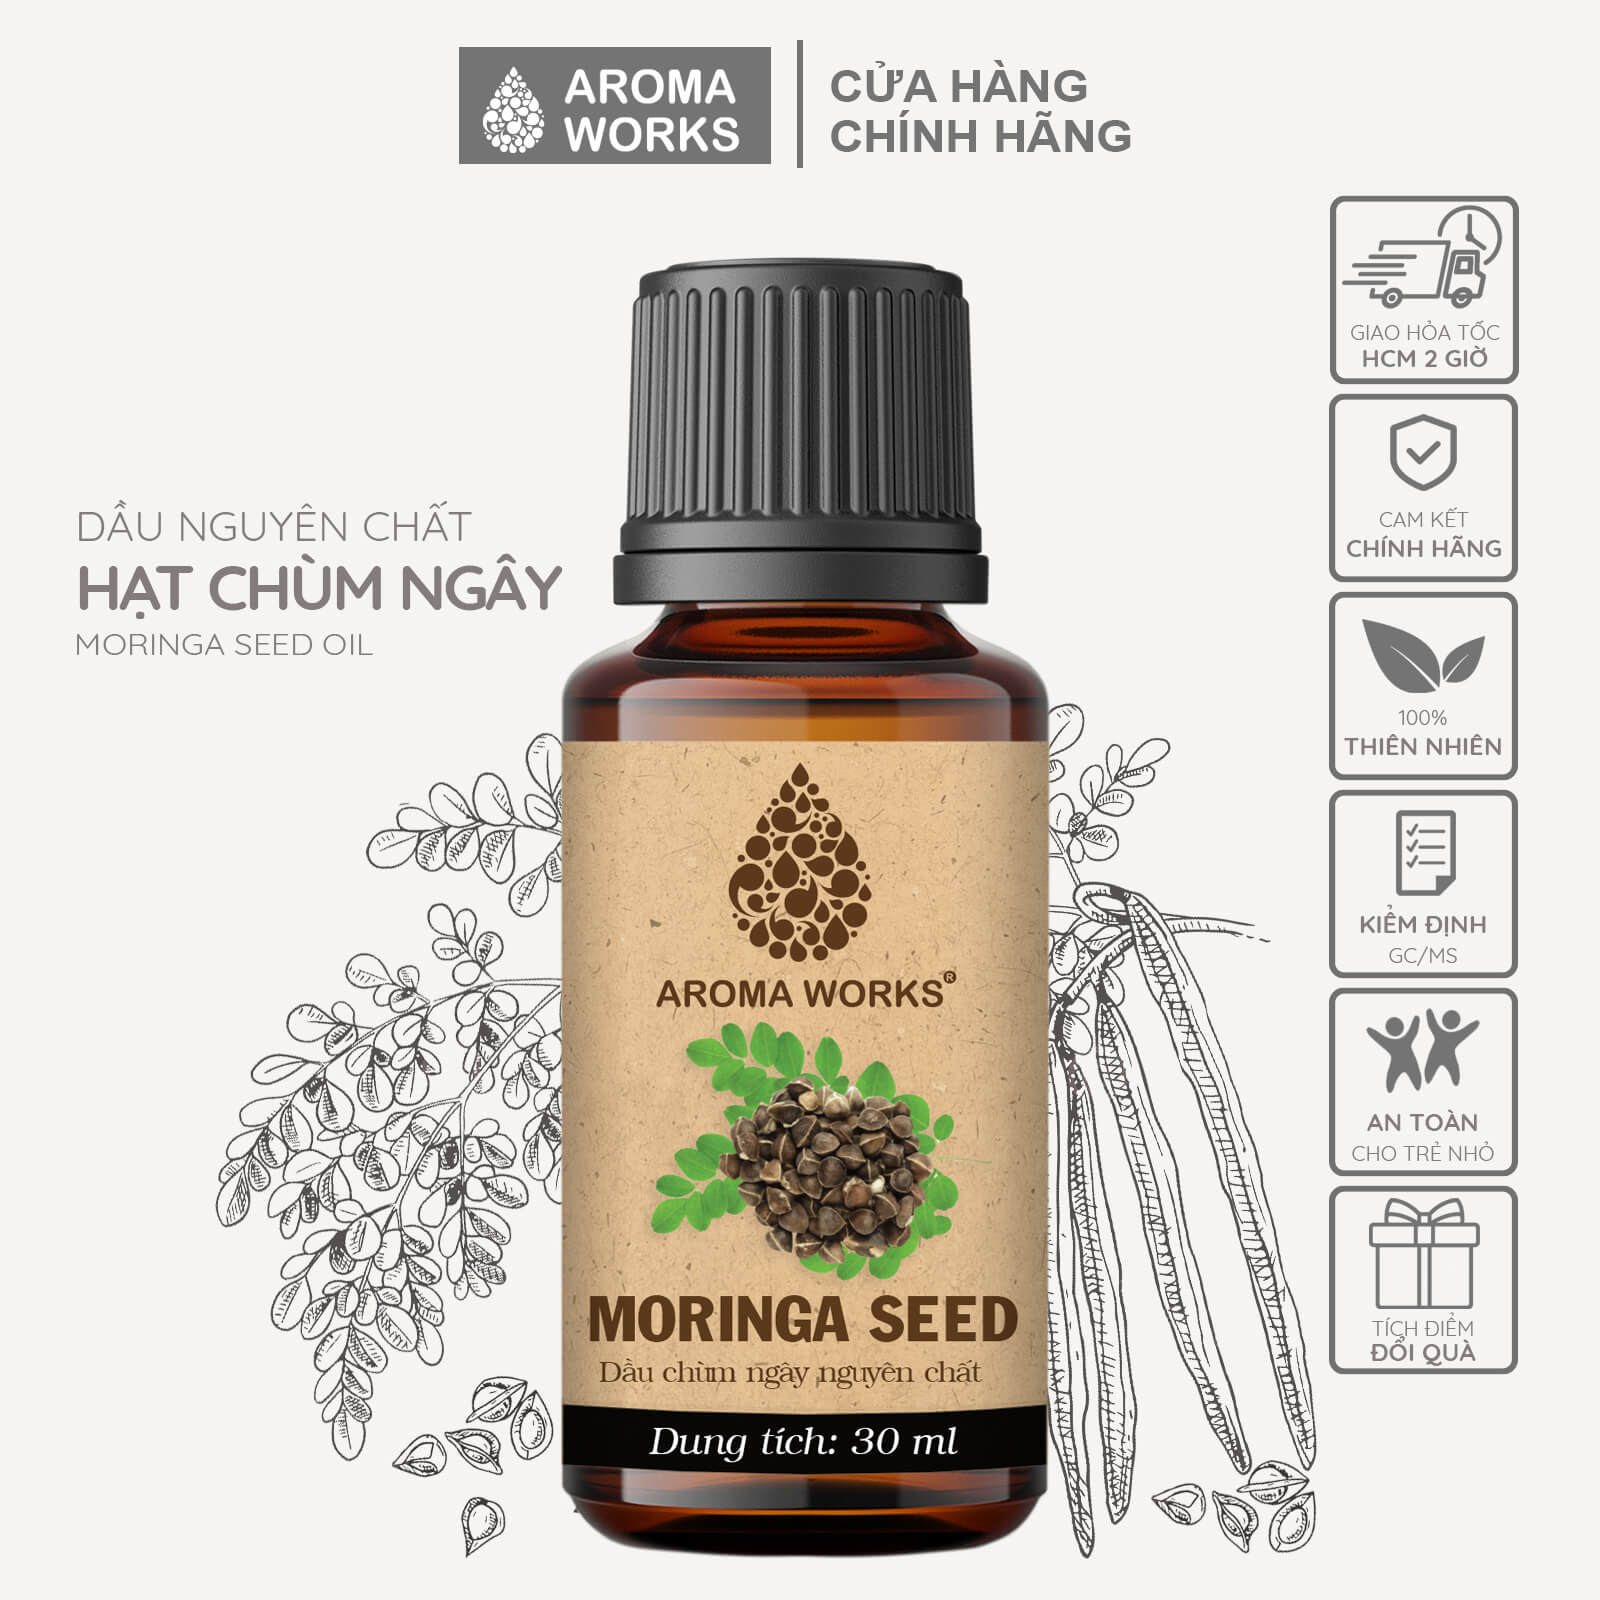 Dầu Hạt Chùm Ngây Aroma Works Organic Moringa Seed Oil Cấp Ẩm, Sáng Da, Mờ Nám, Xóa Mờ Nếp Nhăn